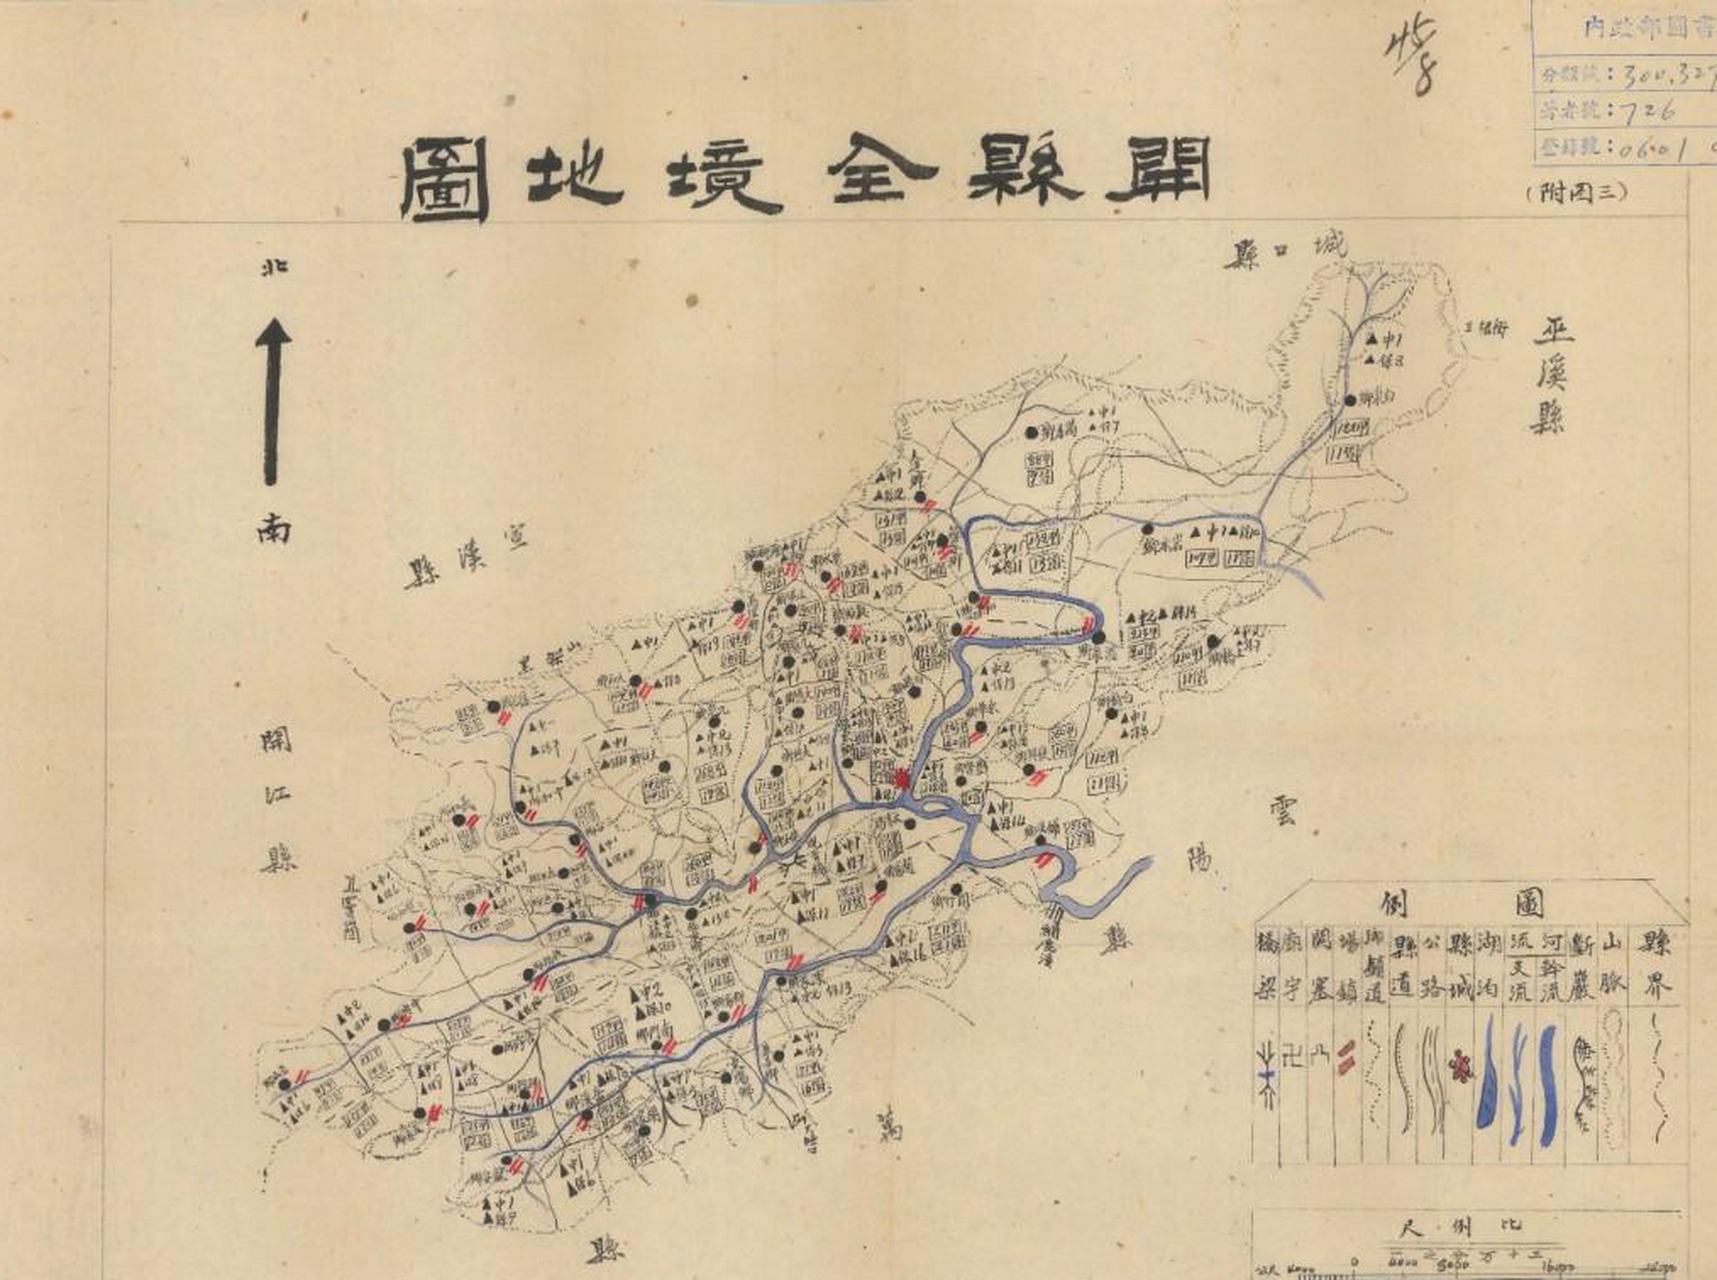 这是一张民国时期的开县(今重庆市开州区)地图